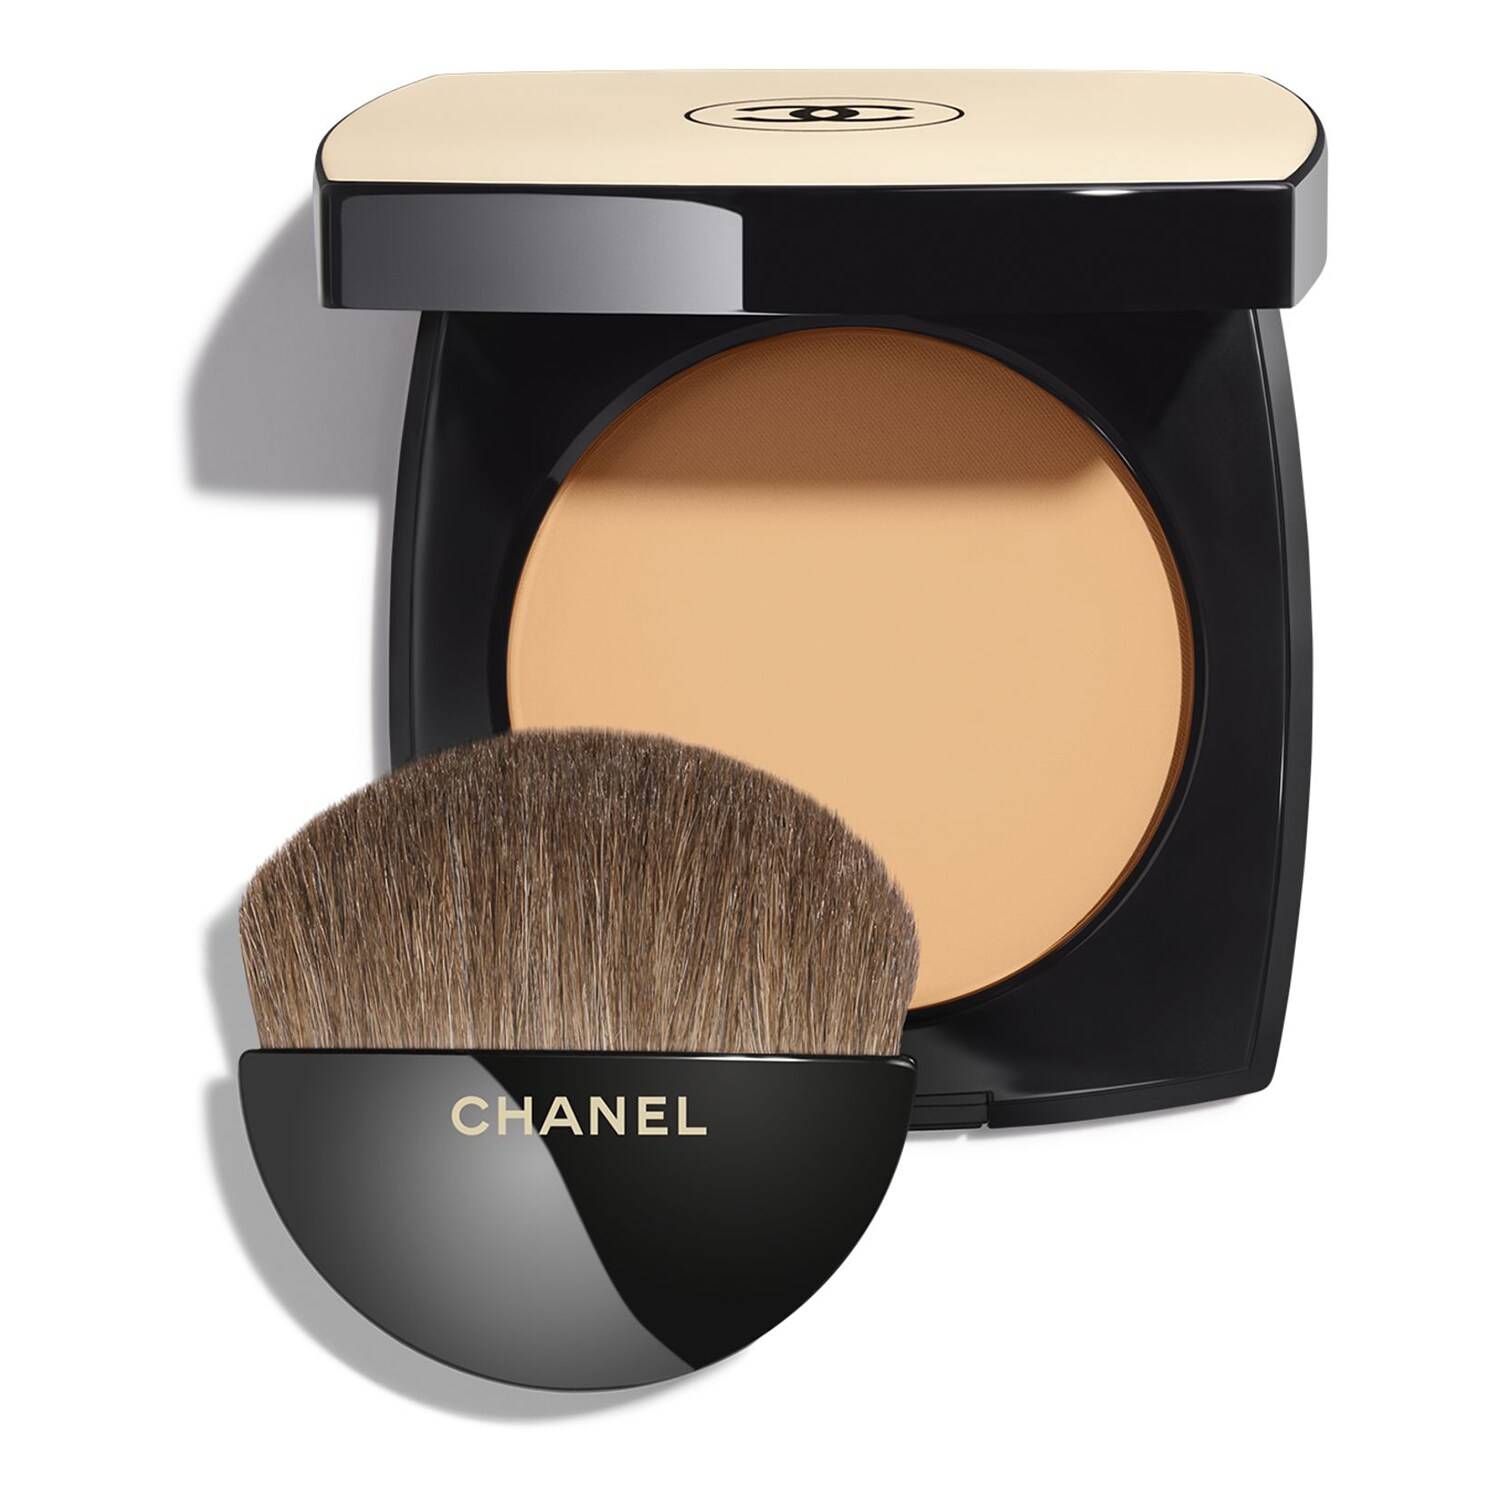 Chanel Les Beiges Healthy Glow Powder 12G B30